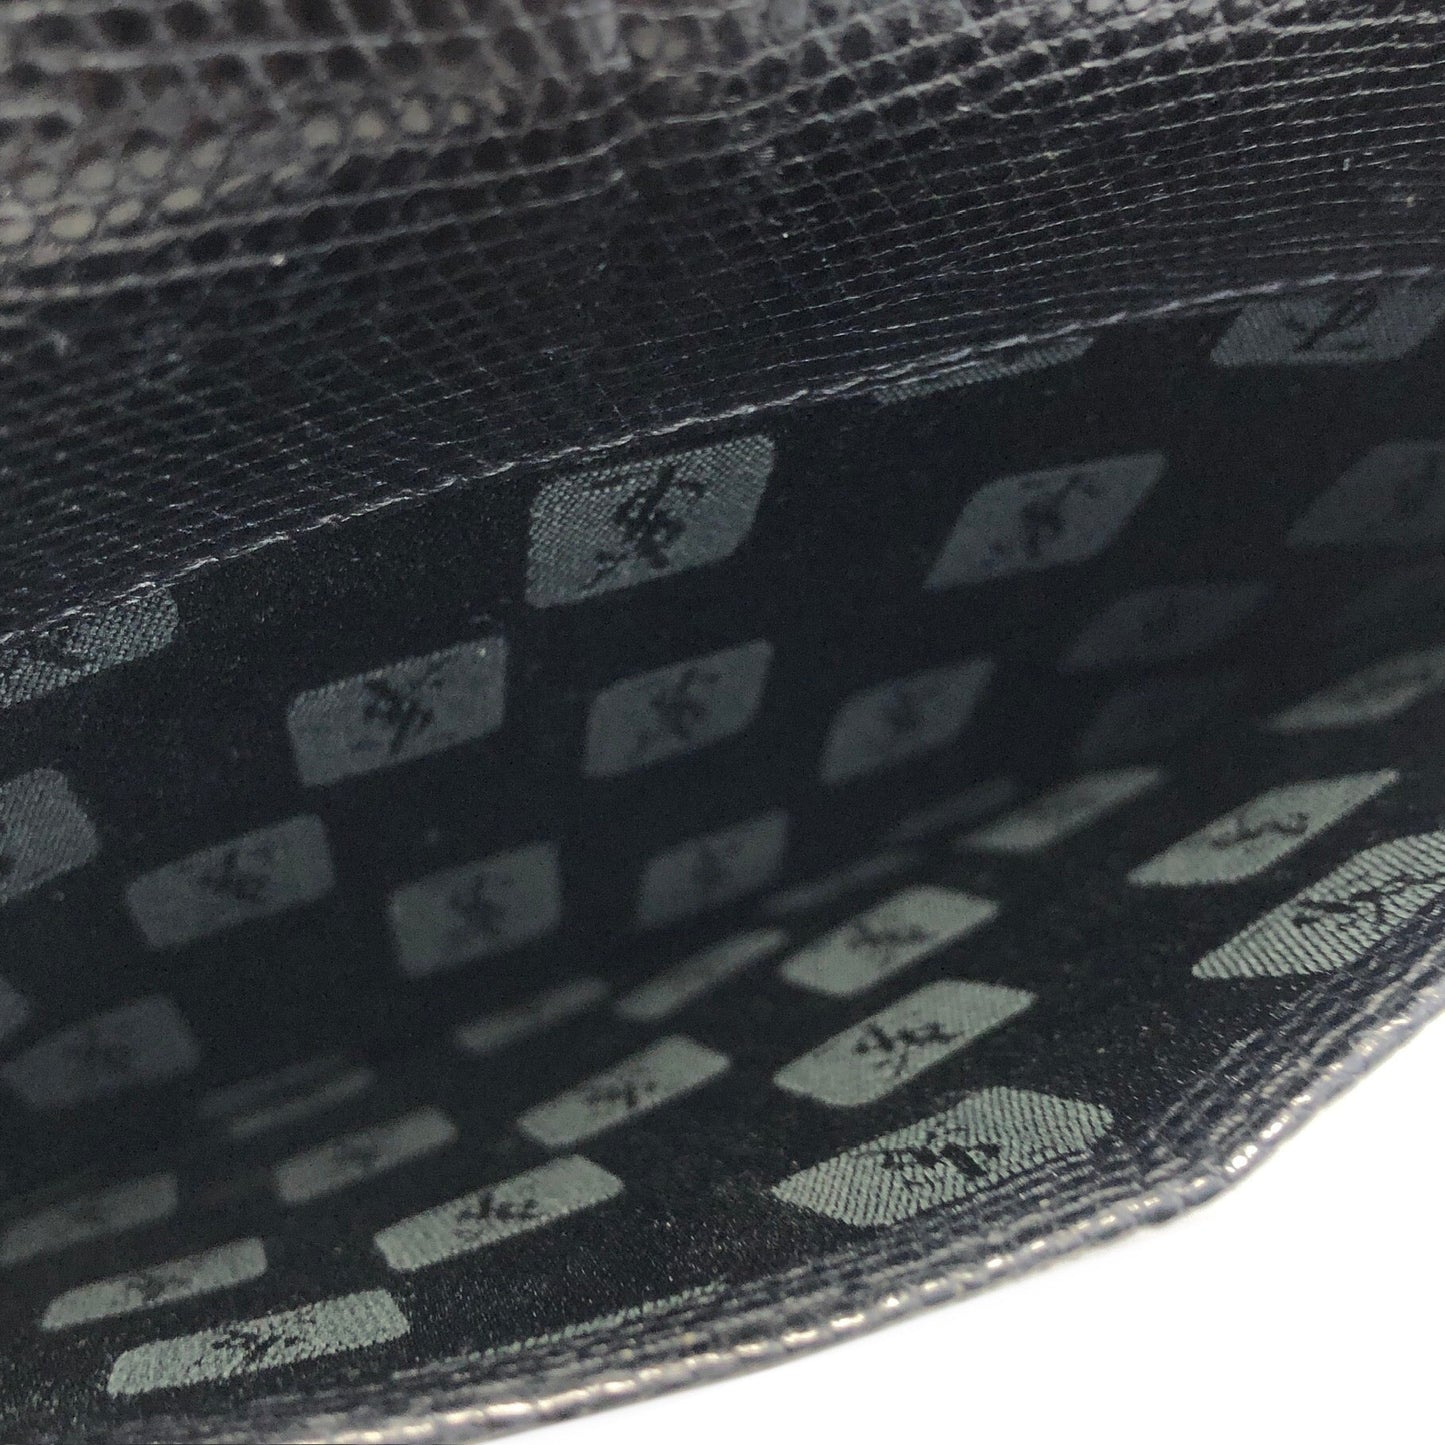 Yves Saint Laurent YSL Logo Lizard Embossed Two-way Shoulder bag Handbag Black Vintage Old f23f2e